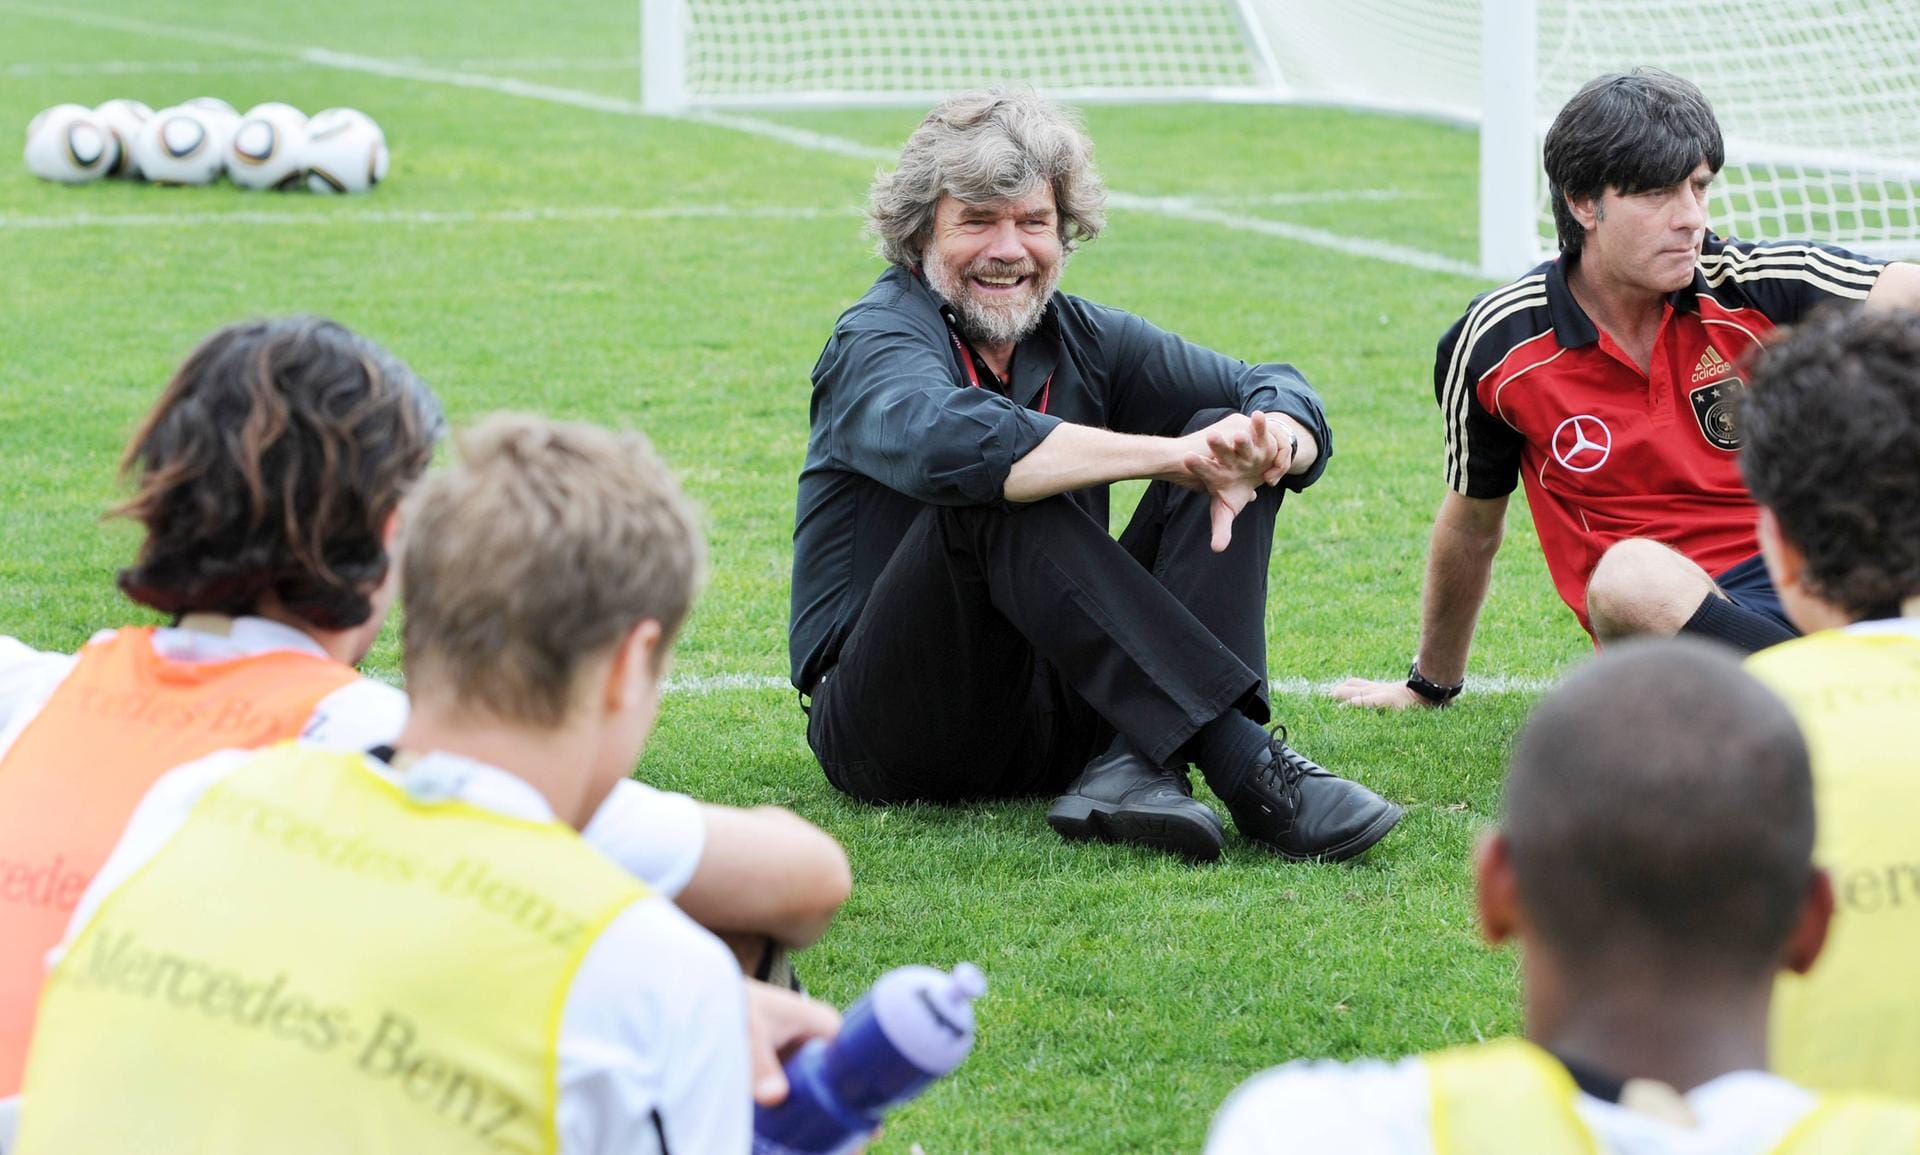 Messner im Trainingslager der deutschen Nationalmannschaft zur Vorbereitung auf die WM 2010: Inzwischen ist Messner ein Nationalheld geworden, der vielen Sportlern als Vorbild gilt.